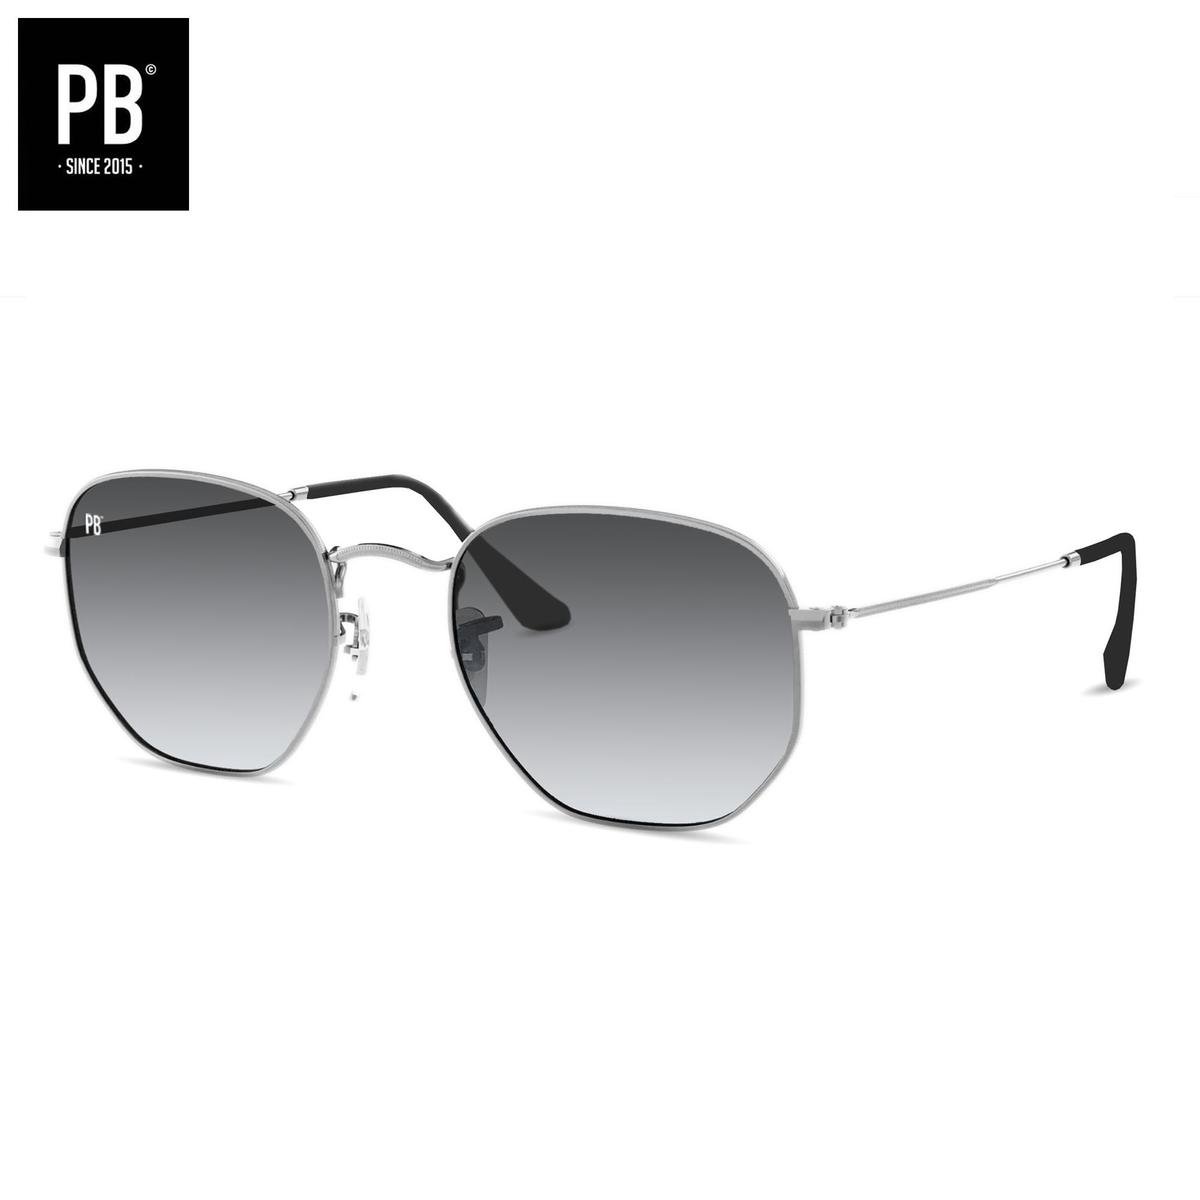 PB Sunglasses - Hex Silver Gradient Grey. - Zonnebril heren en dames gepolariseerd - Hexagon stijl - Zilver metalen frame